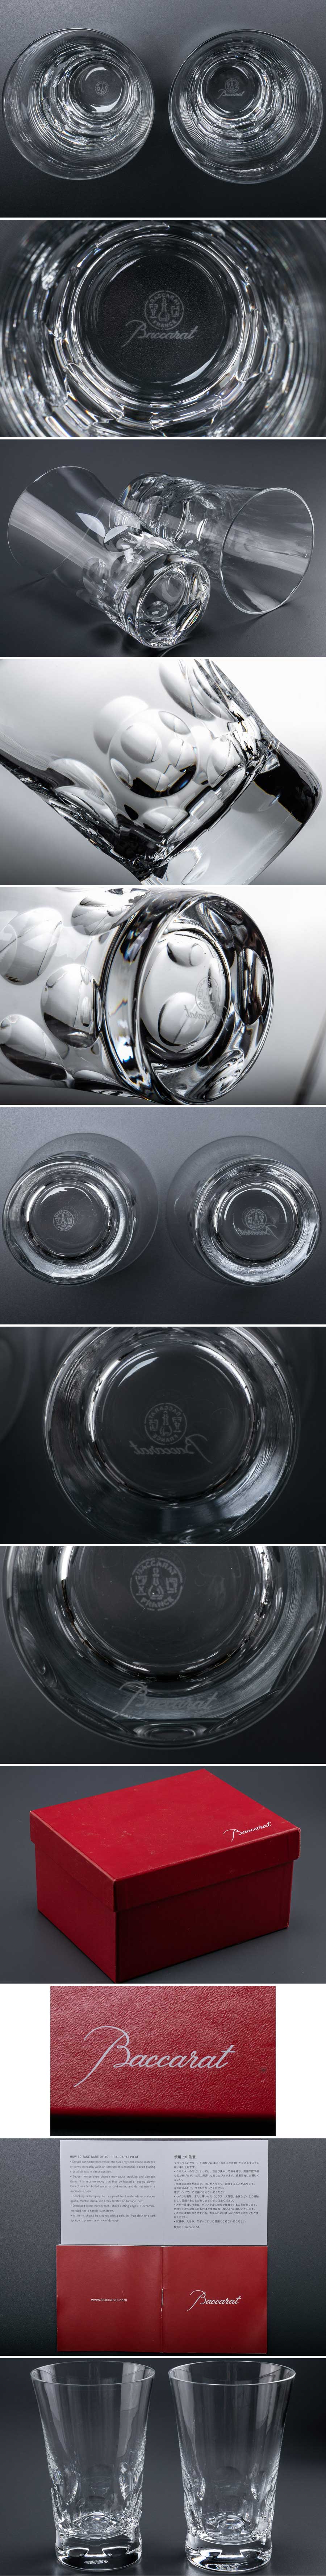 商品『 Baccarat バカラ ベルーガ ハイボールグラス 2客 箱付 8218 』 2個組 洋食器 ブランド テーブルウェア クリスタルガラス 工芸ガラス